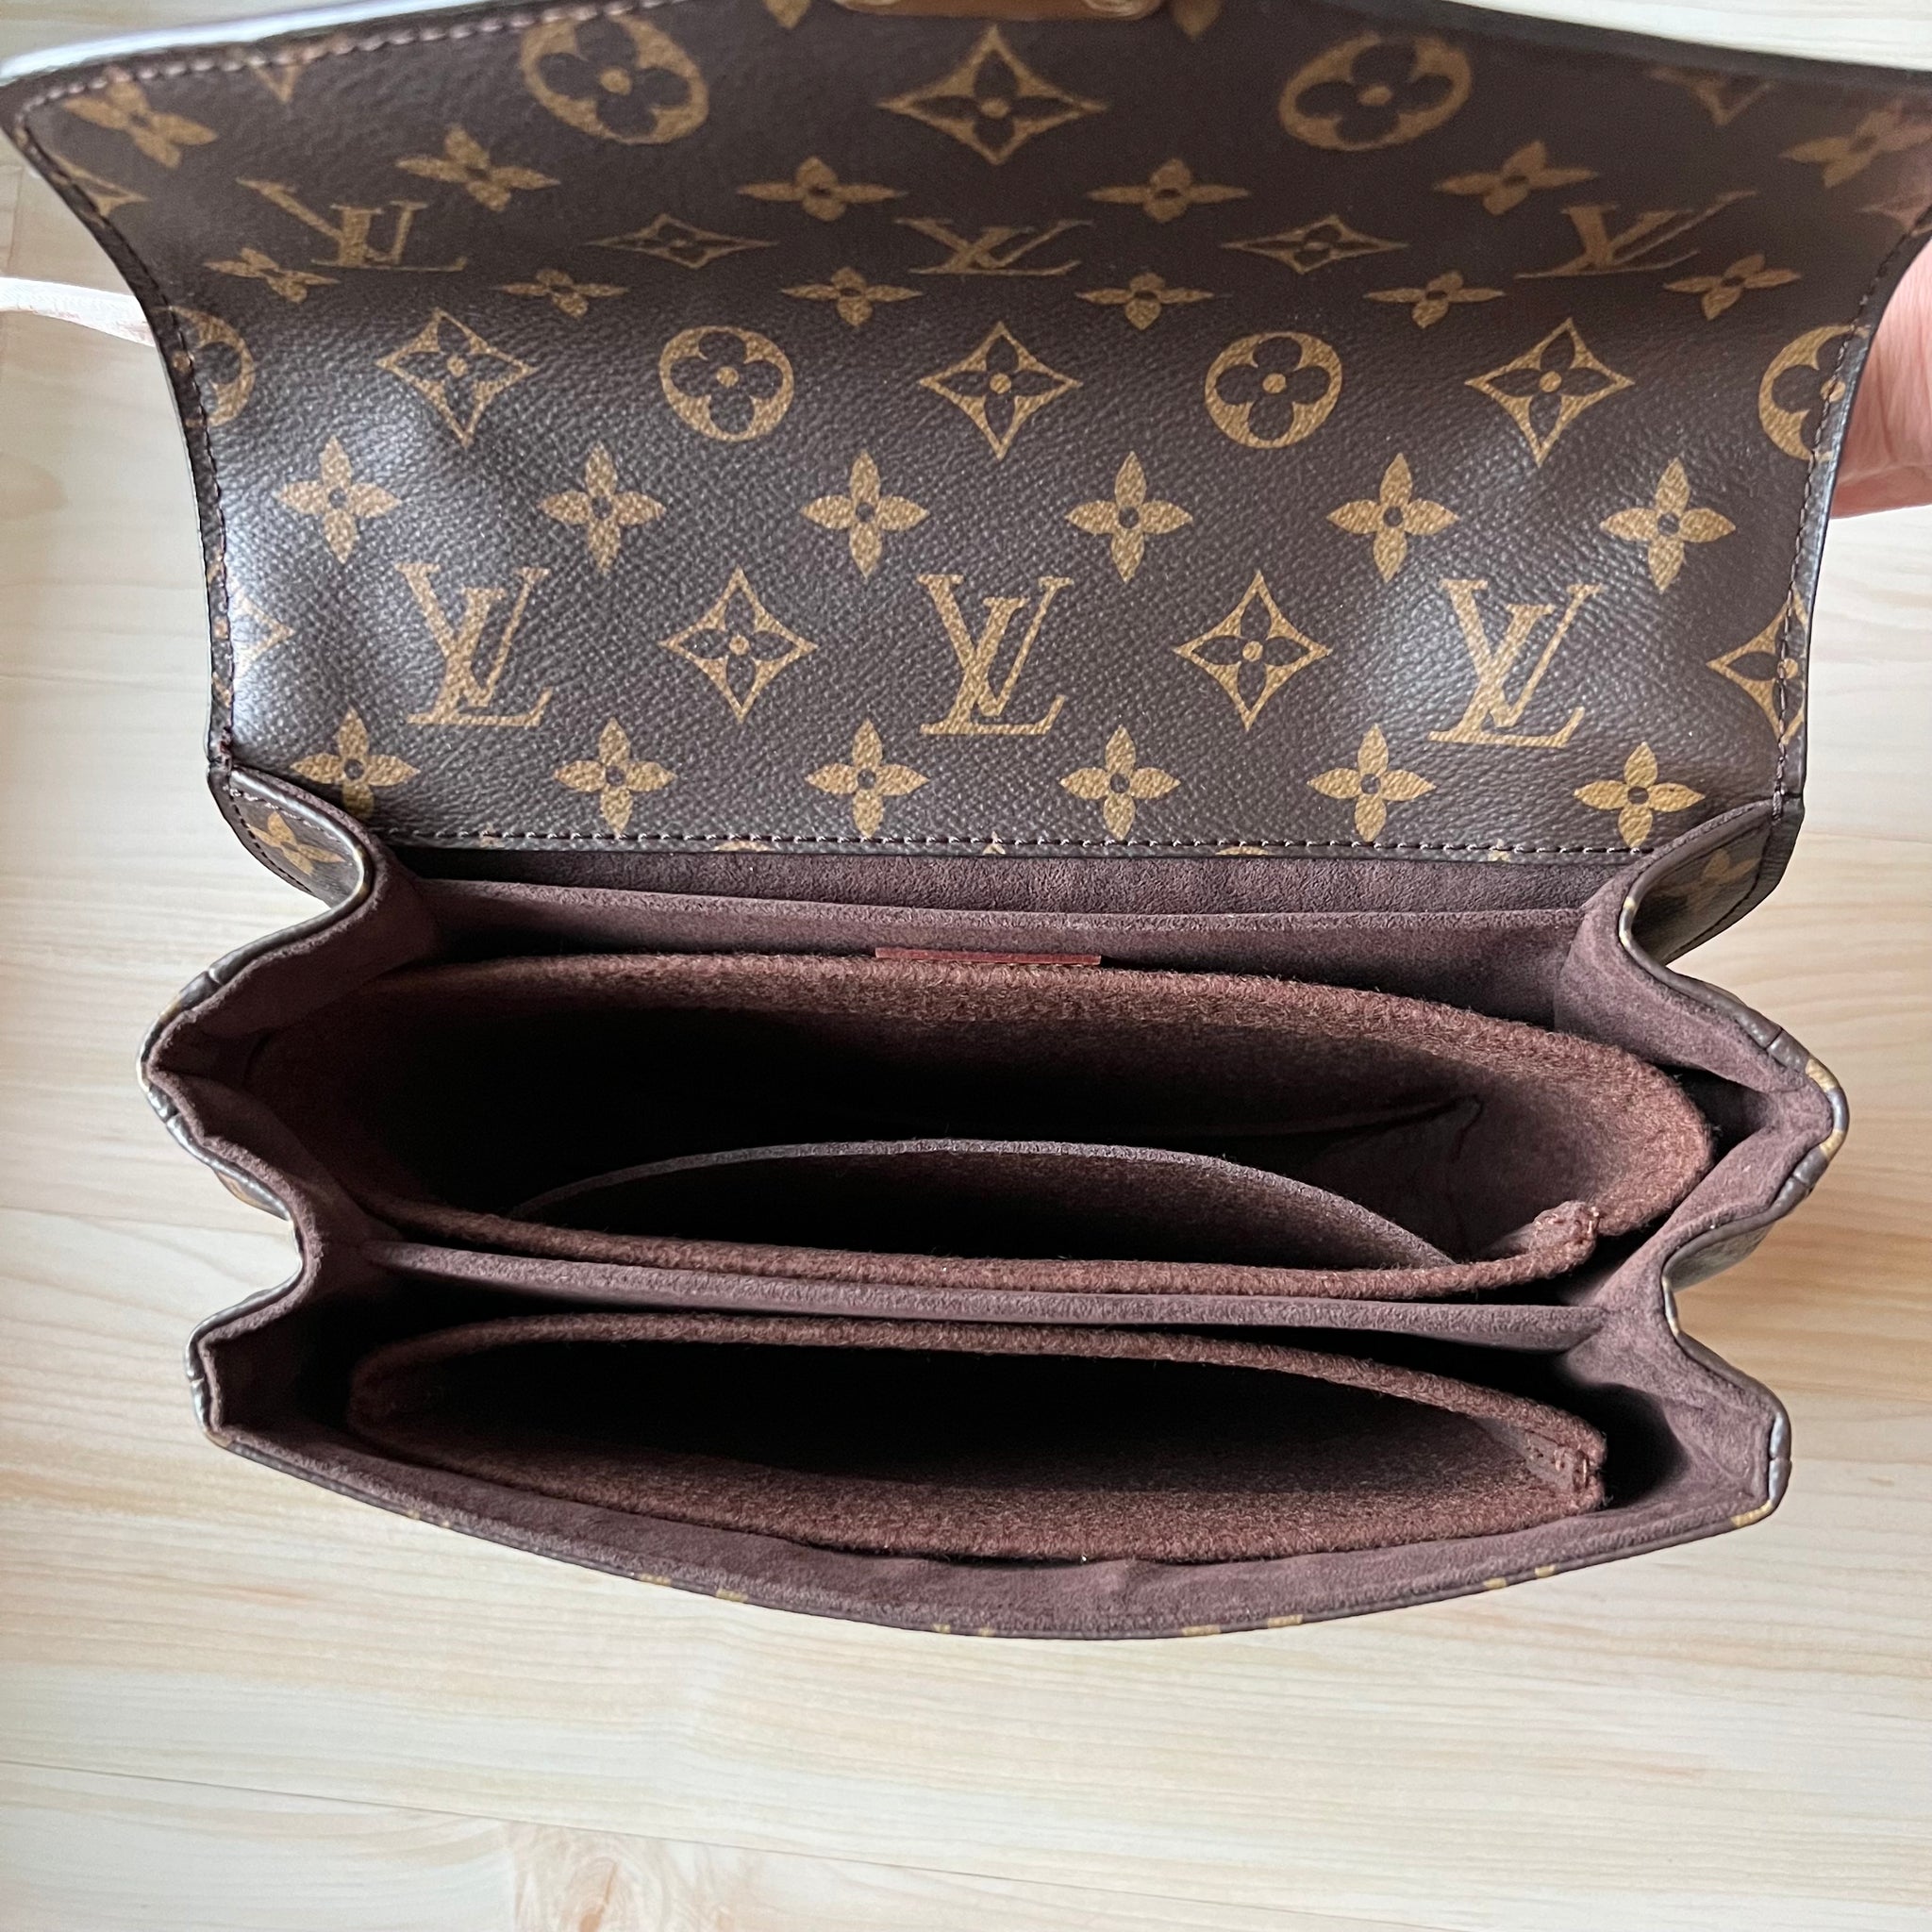 Bagpad Louis Vuitton Pochette Métis Bag Shapers